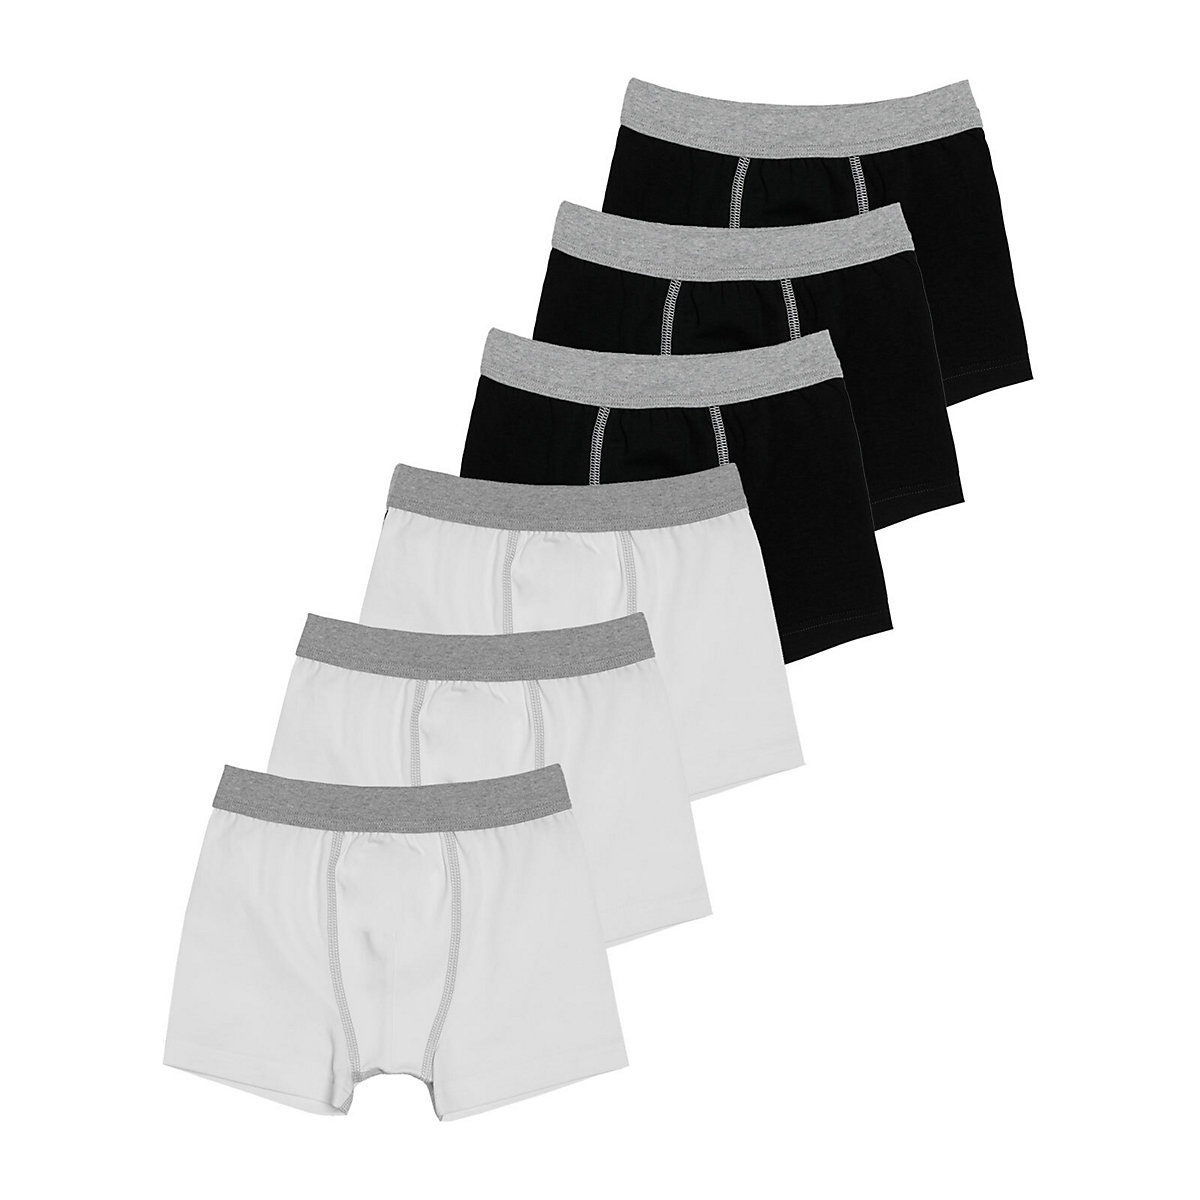 Sweety for Kids 6er Sparpack Knaben Shorts Single Jersey Retroshorts für Jungen schwarz/weiß